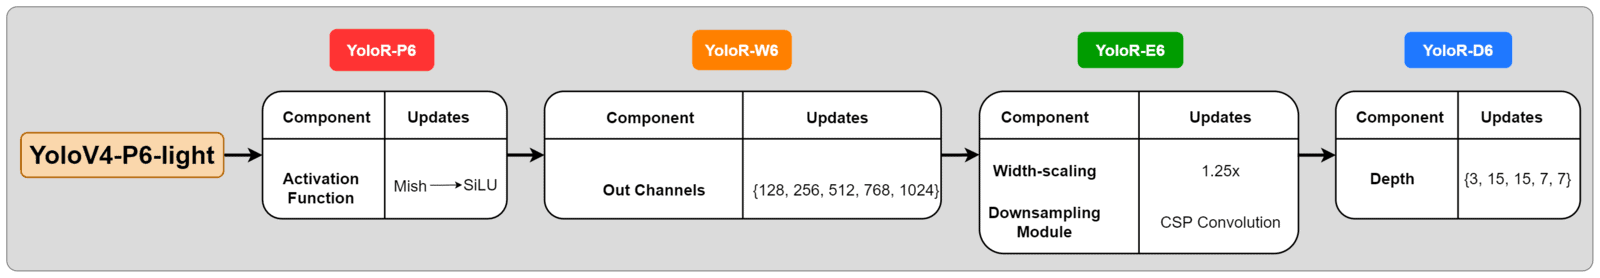 Модели YoloR основаны на базовой архитектуре YoloV4-P6-light, в которой обновления выполняются последовательно для создания каждого варианта.